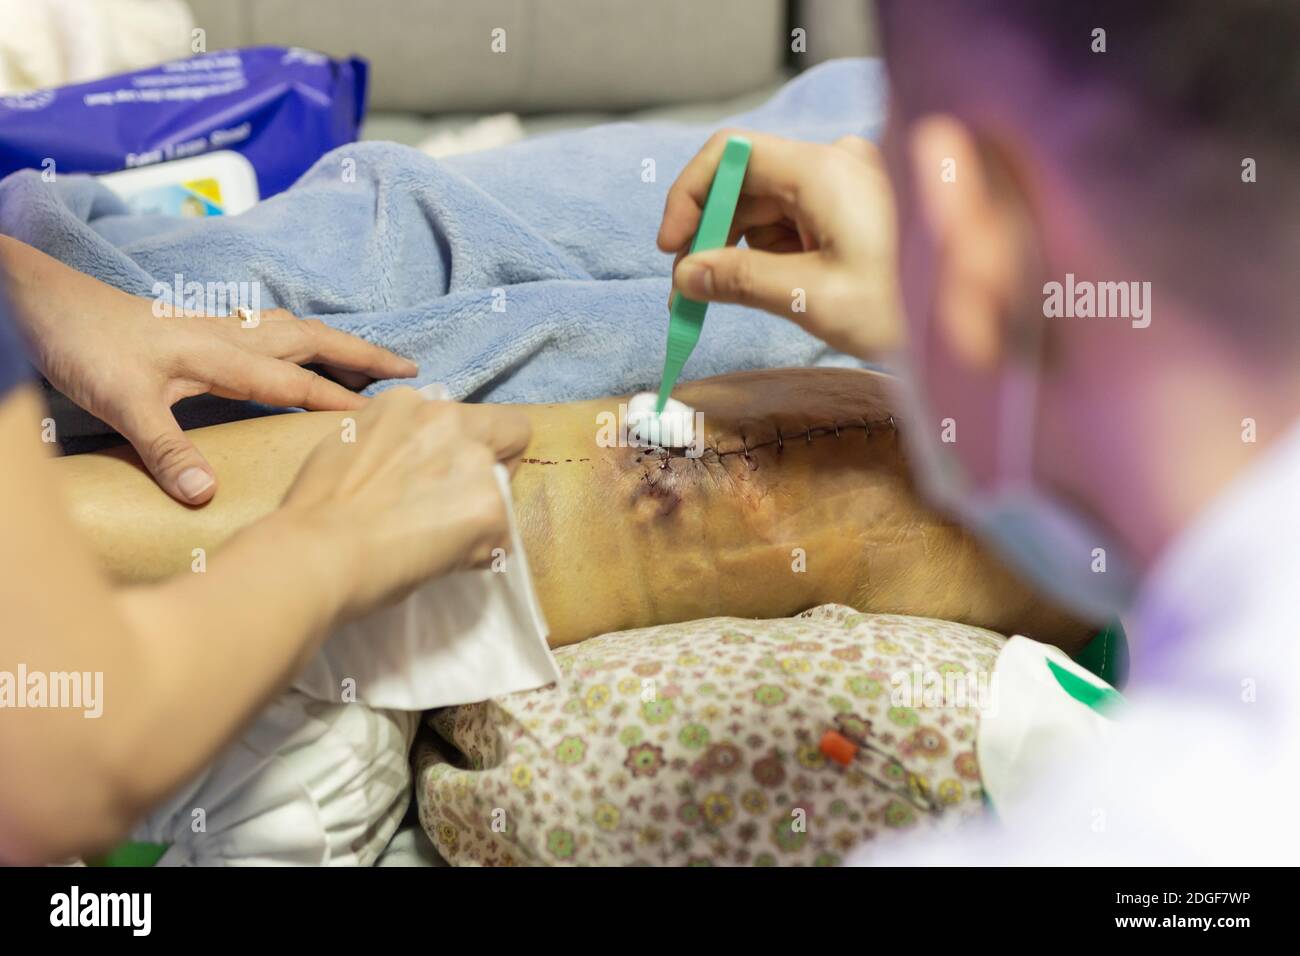 Medico che pulisce il ginocchio del paziente dopo un intervento chirurgico con alcool. Foto Stock